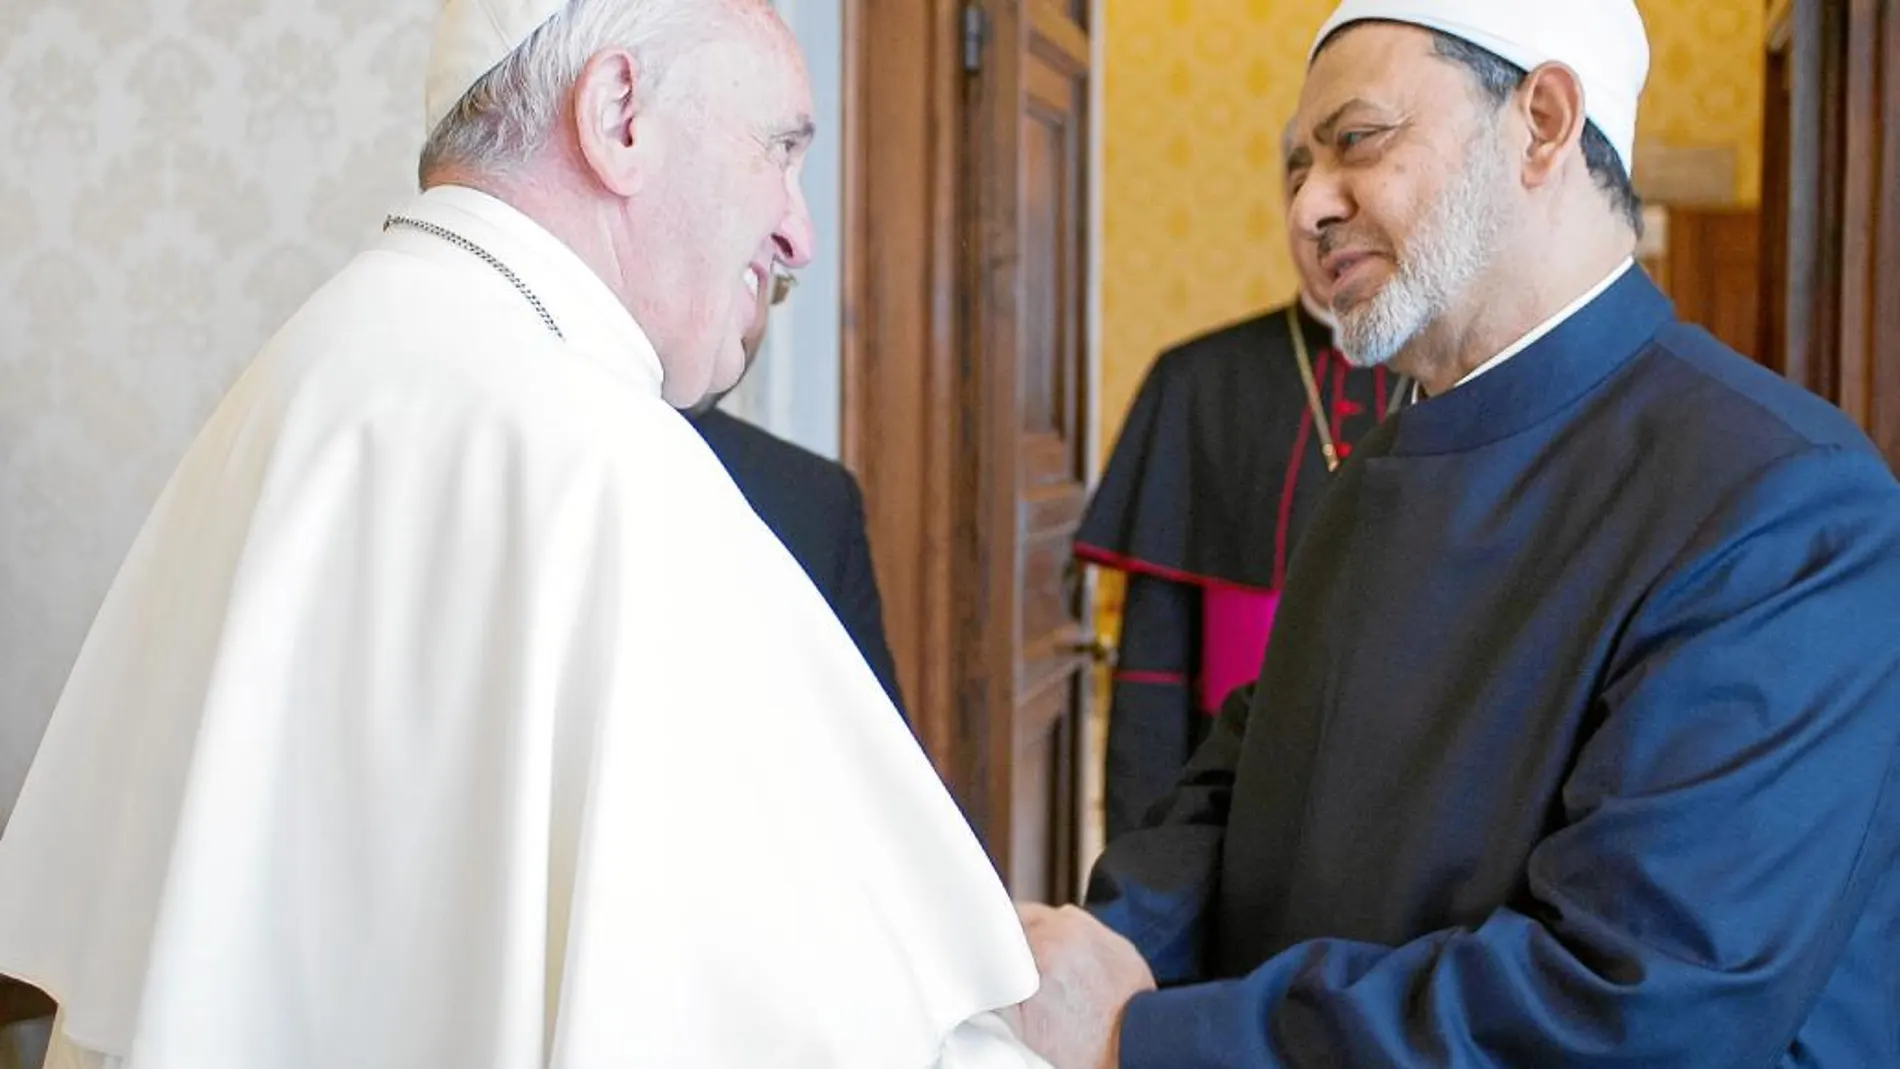 El obispo de Roma se reunió durante más de 30 minutos con el representante de la rama sunita de la religión musulmana